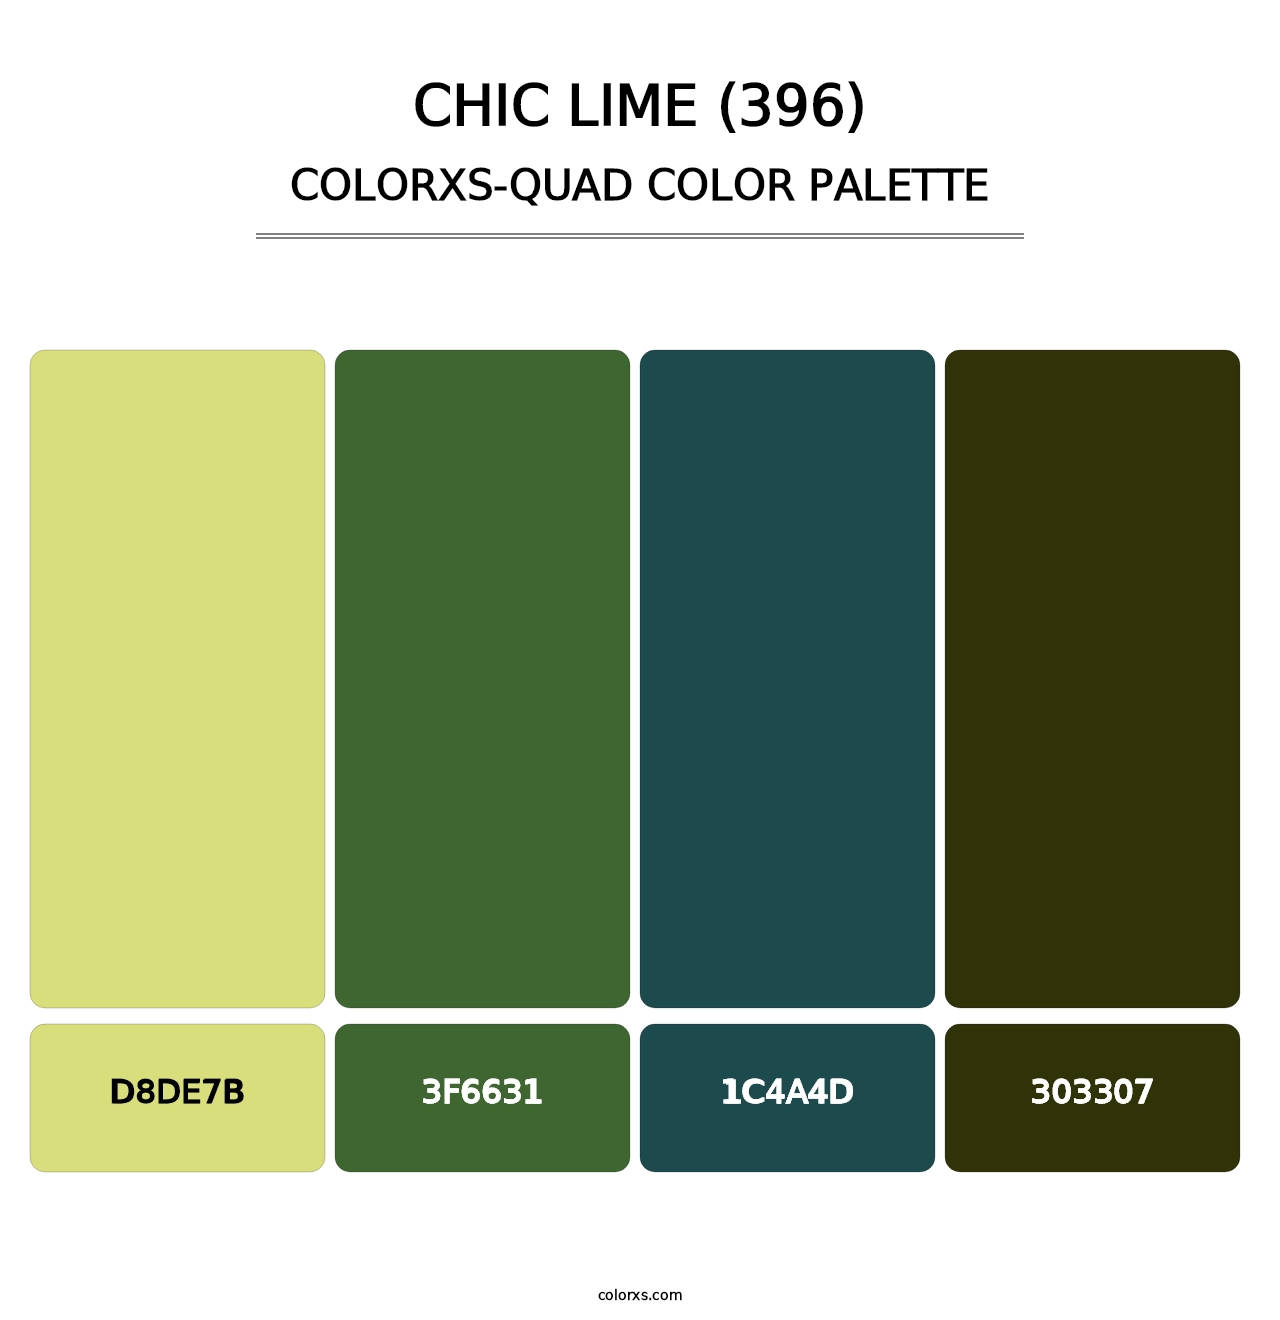 Chic Lime (396) - Colorxs Quad Palette